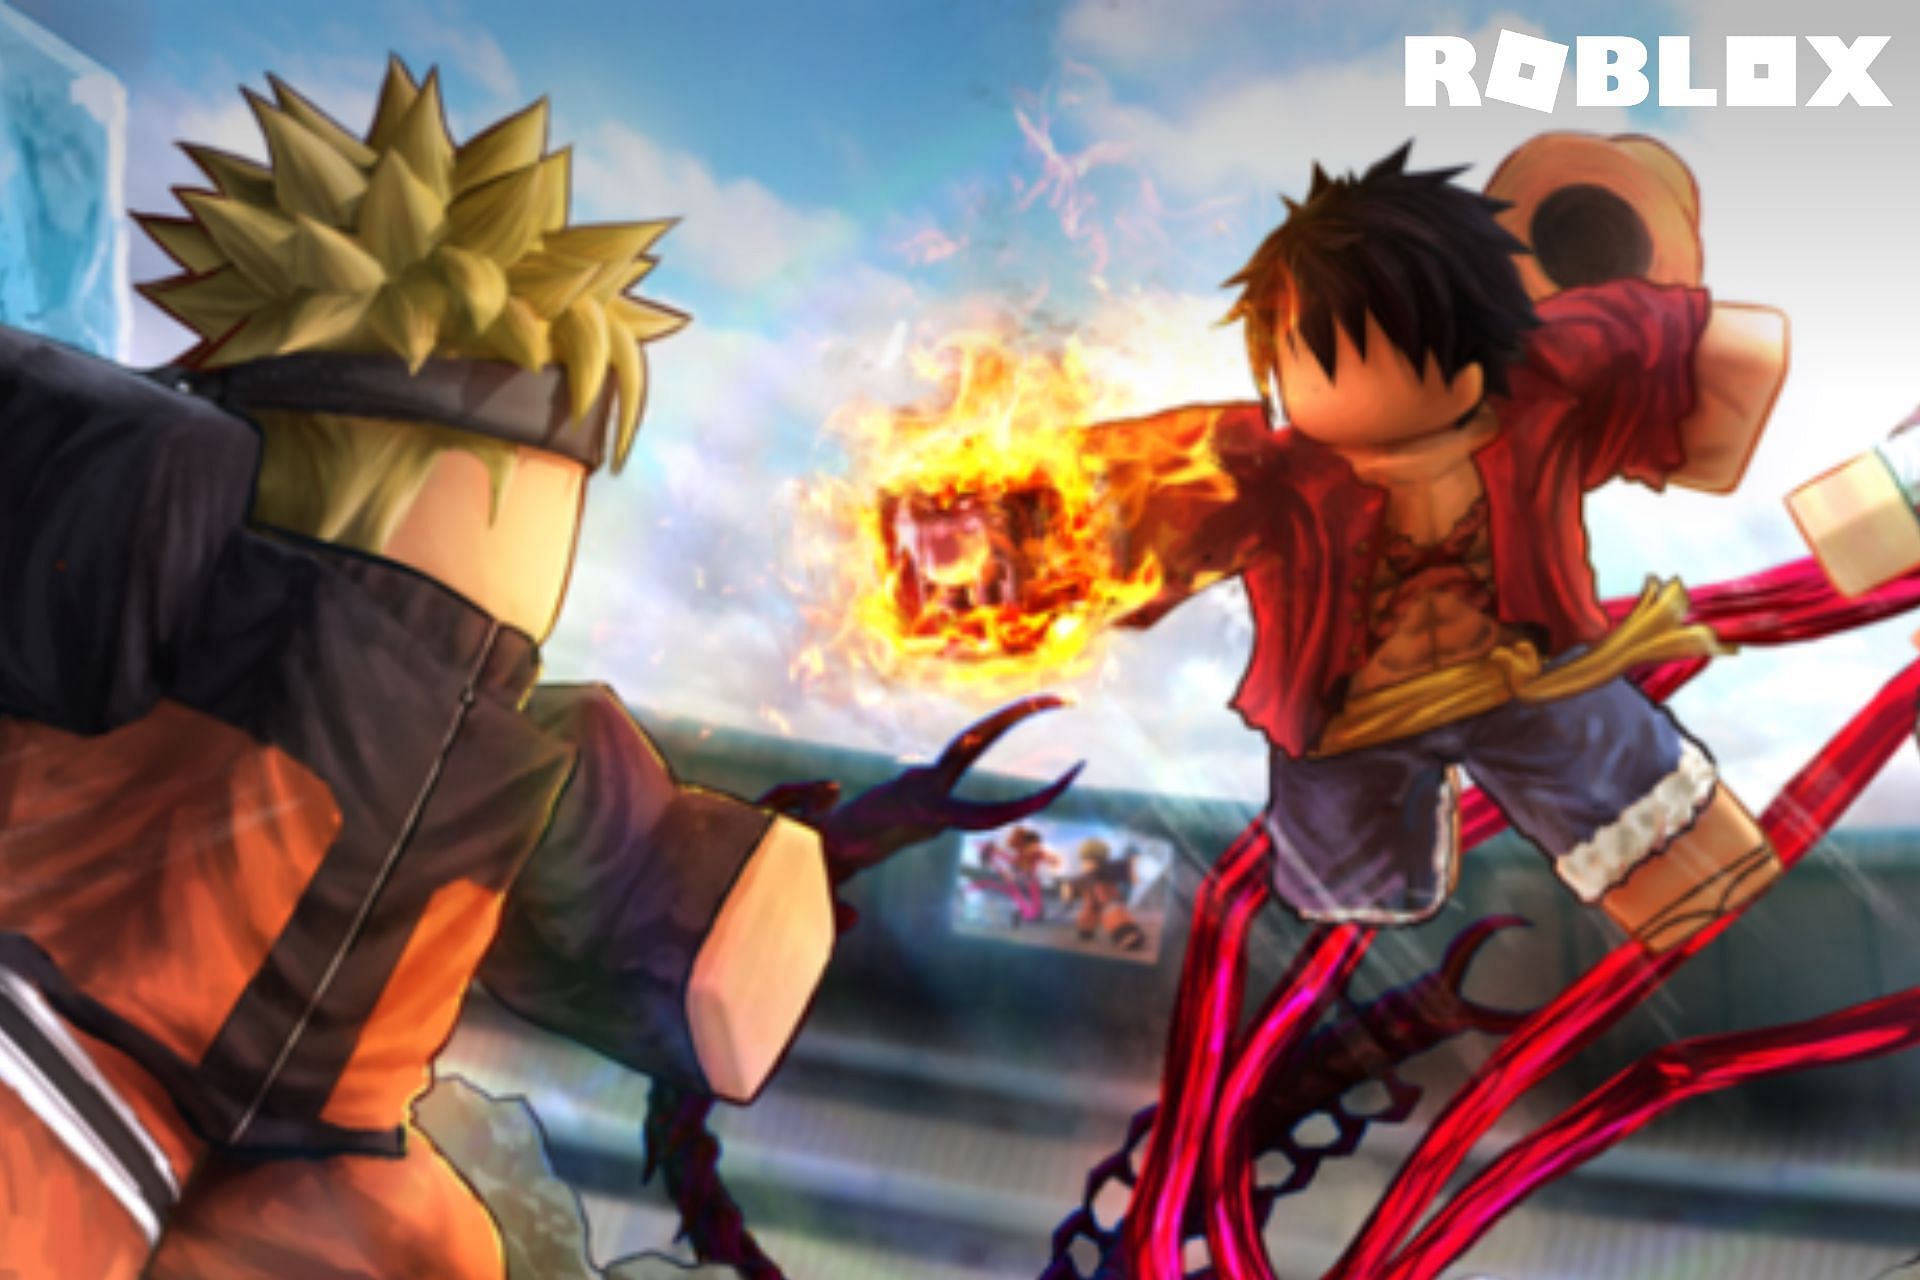 Anime Fighting Simulator codes in Roblox: Free Chikara Shards and Yens